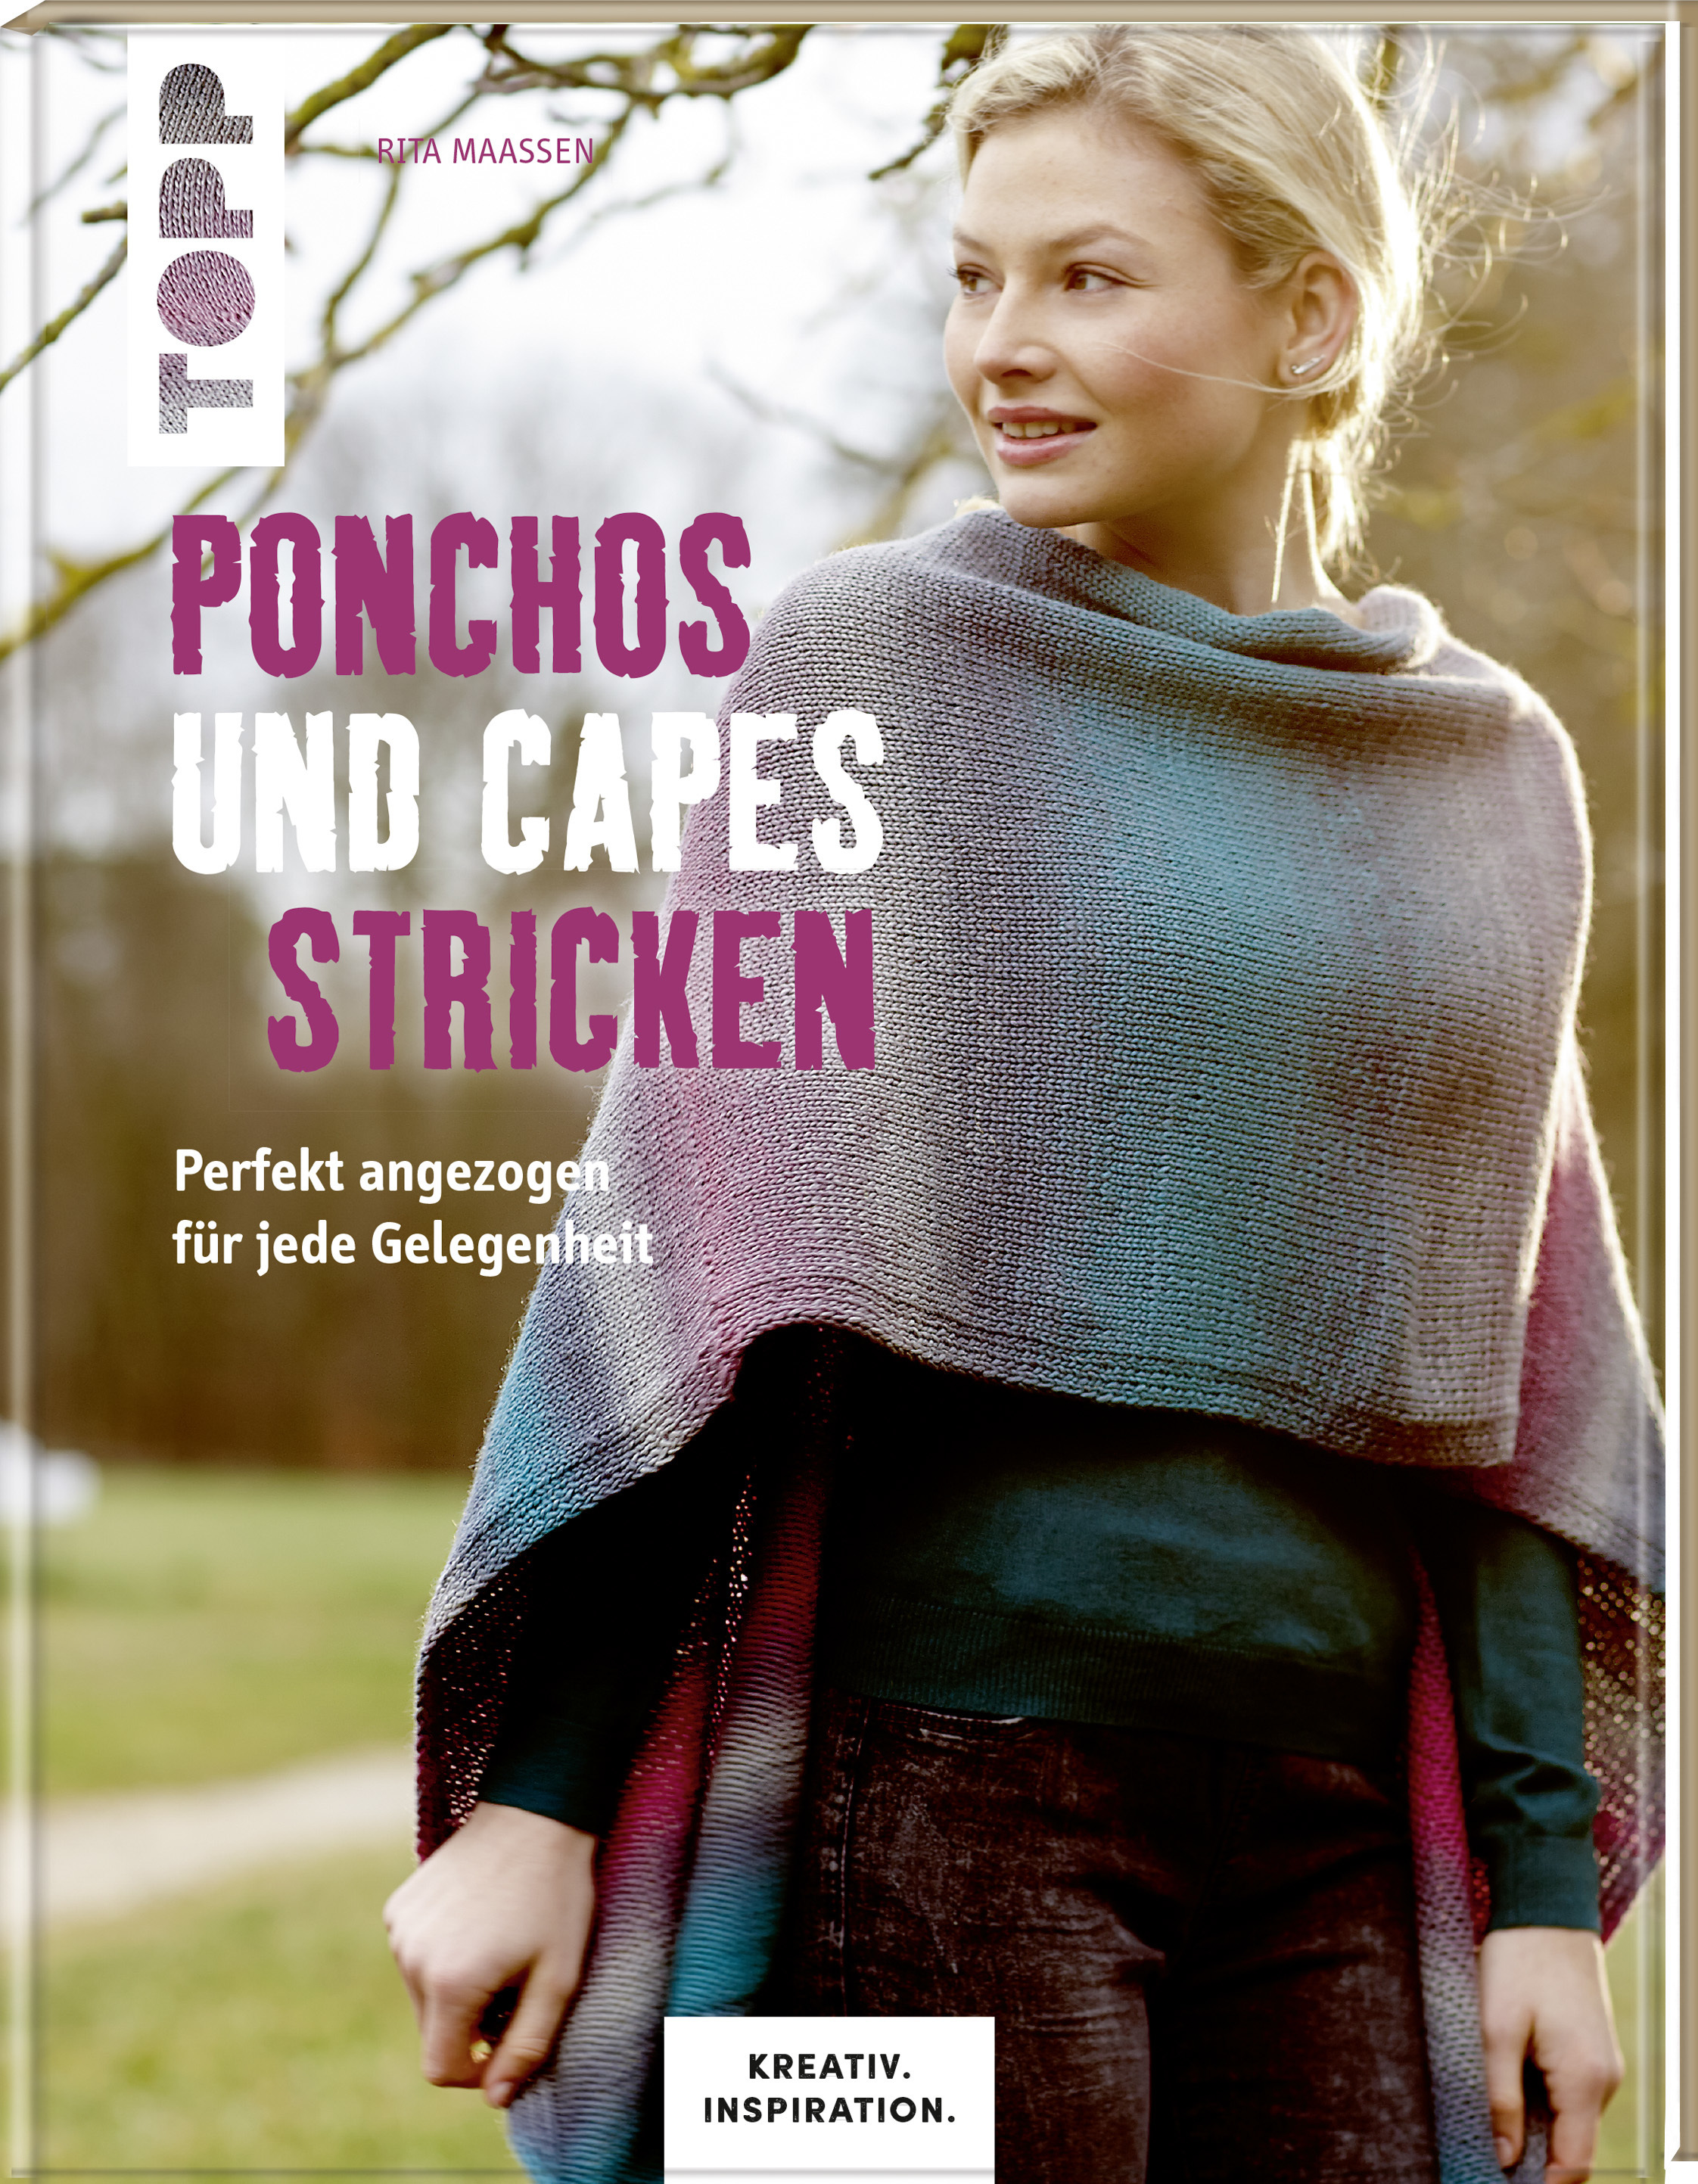 Ponchos und Capes stricken